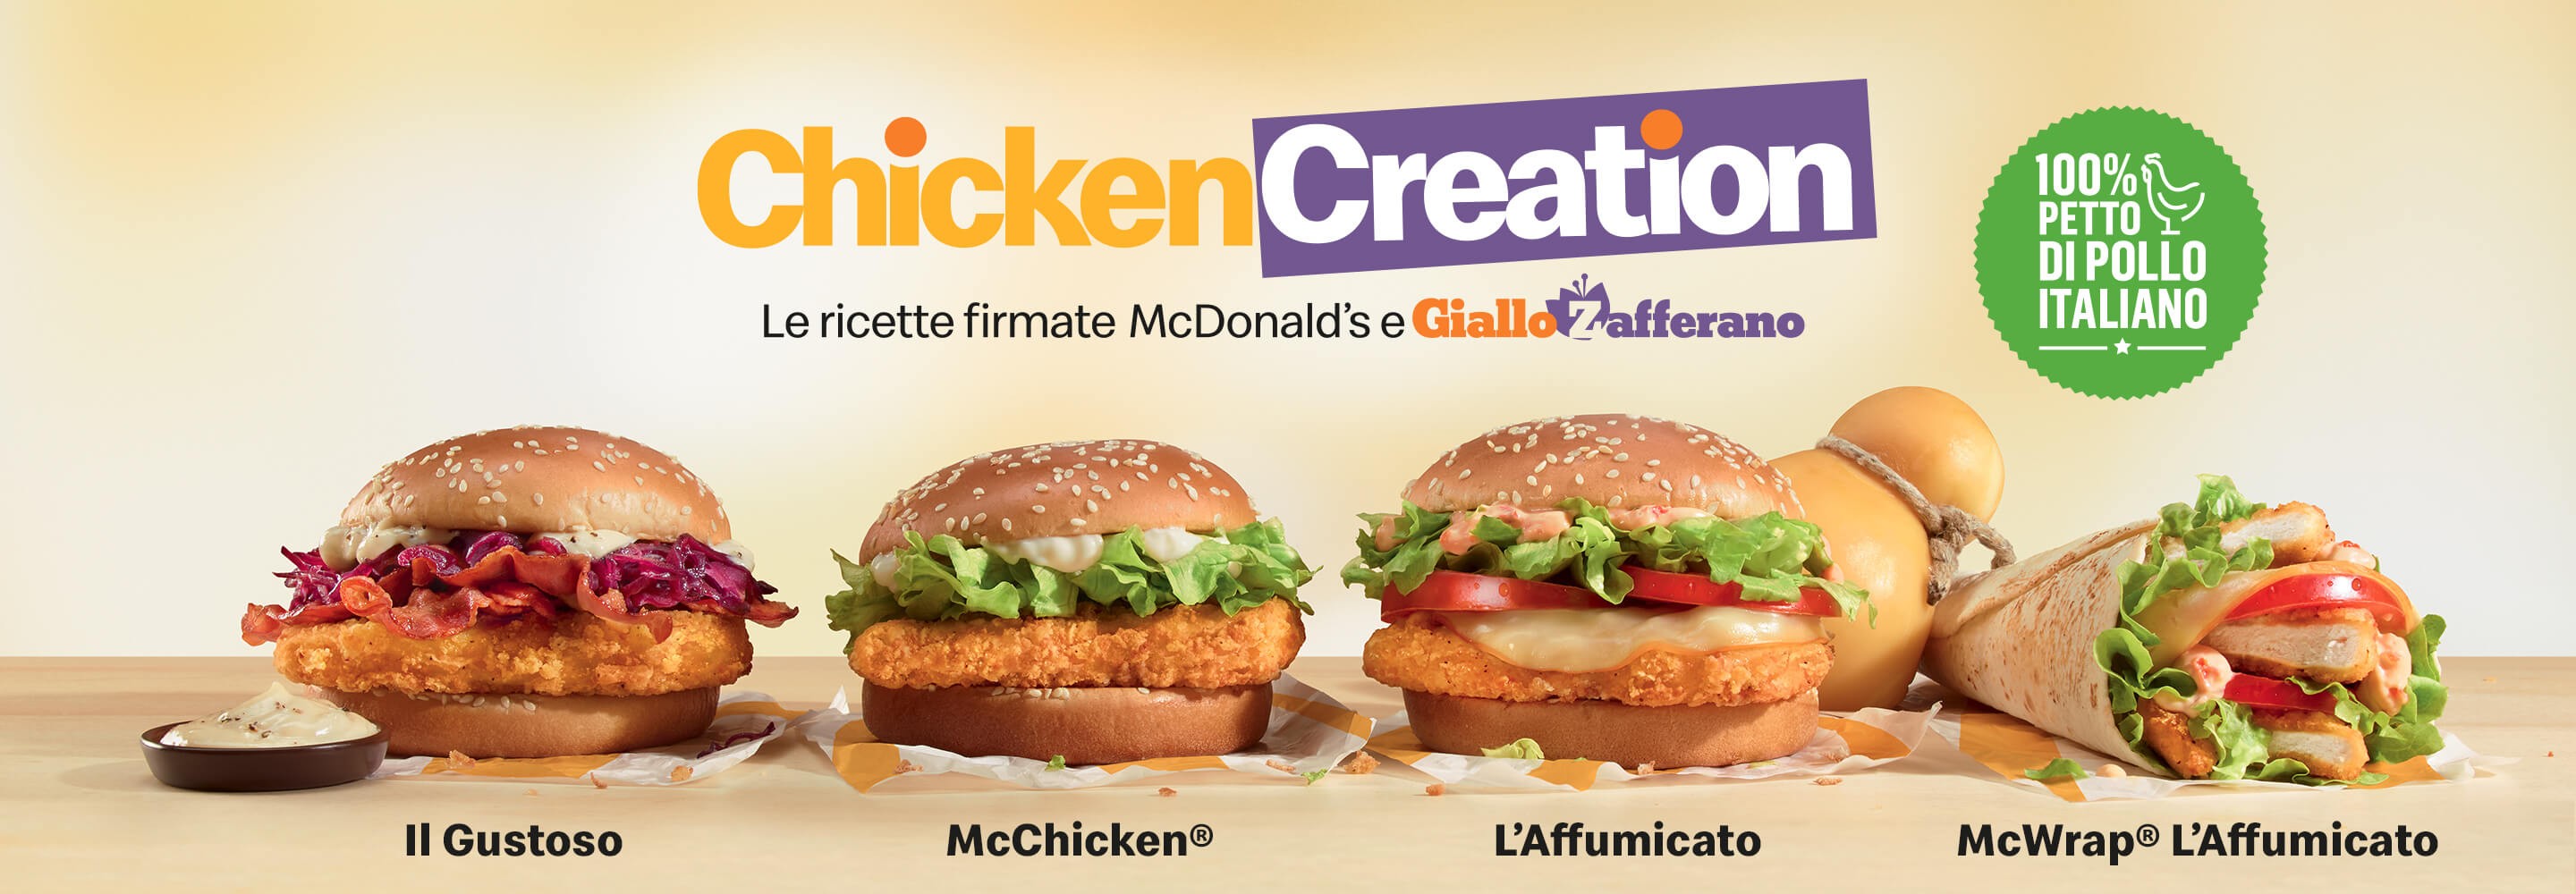 Chicken Creation - Le ricette firmate McDonald's e Giallo Zafferano